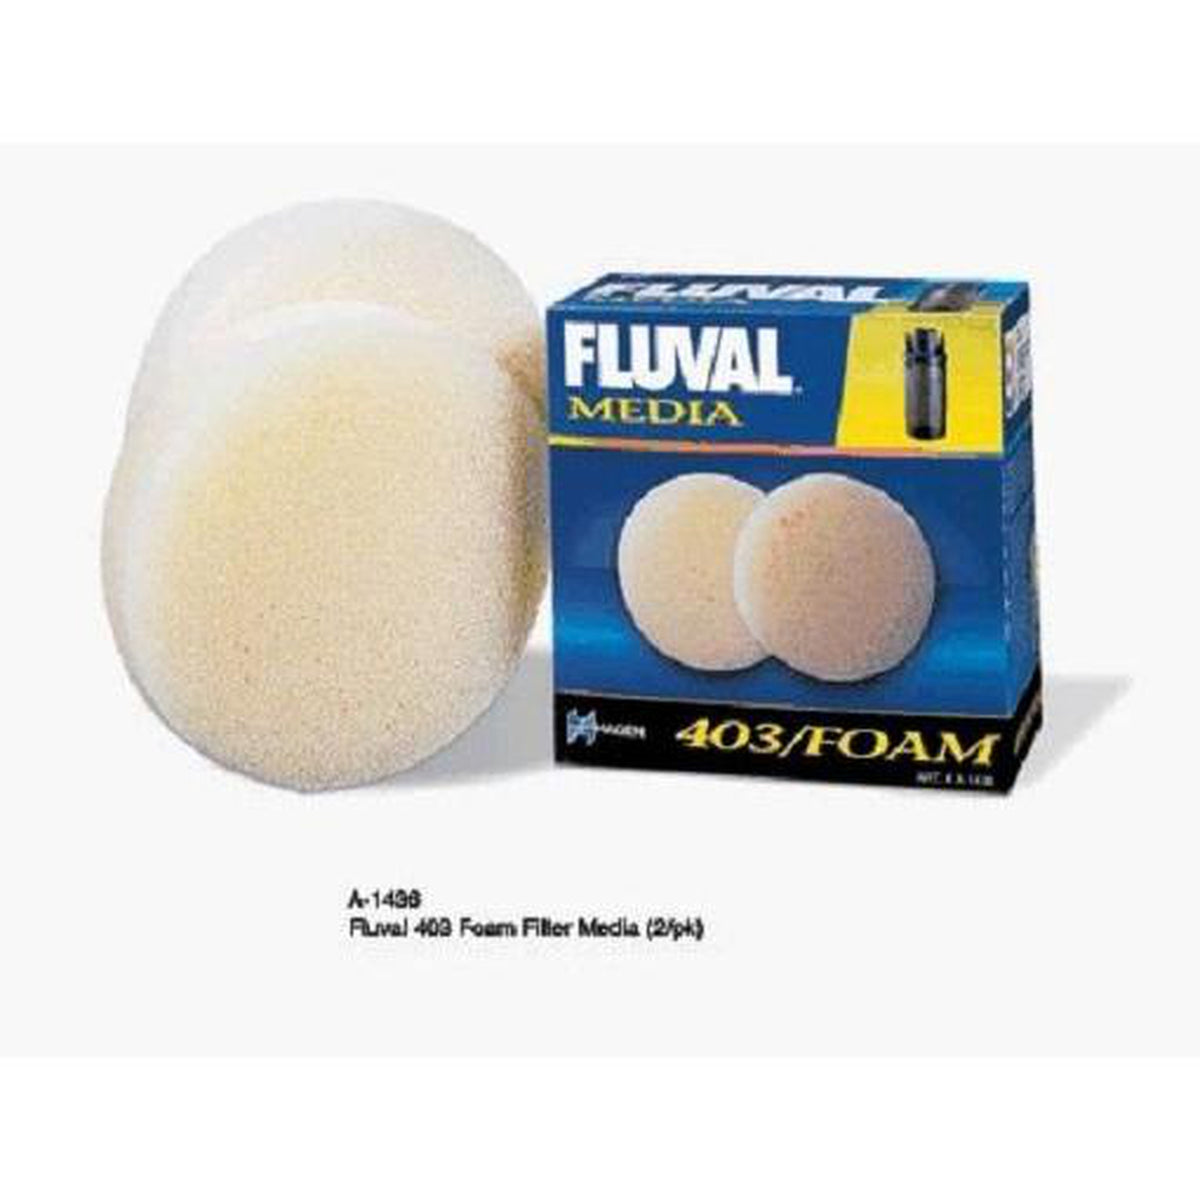 Fluval 403 Foam A1436